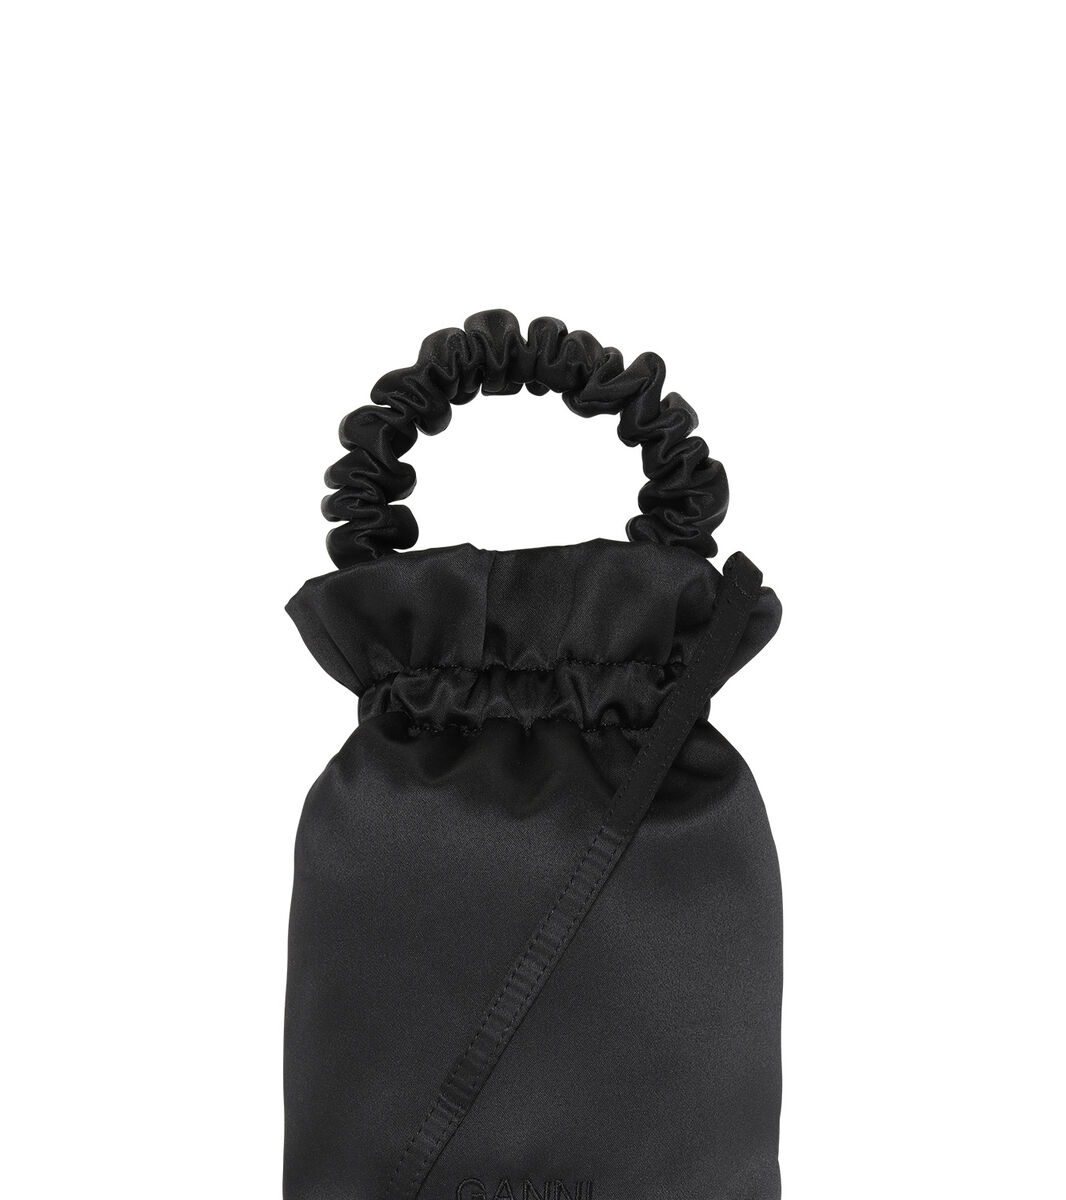 Väska med rynkat handtag, Polyester, in colour Black - 1 - GANNI